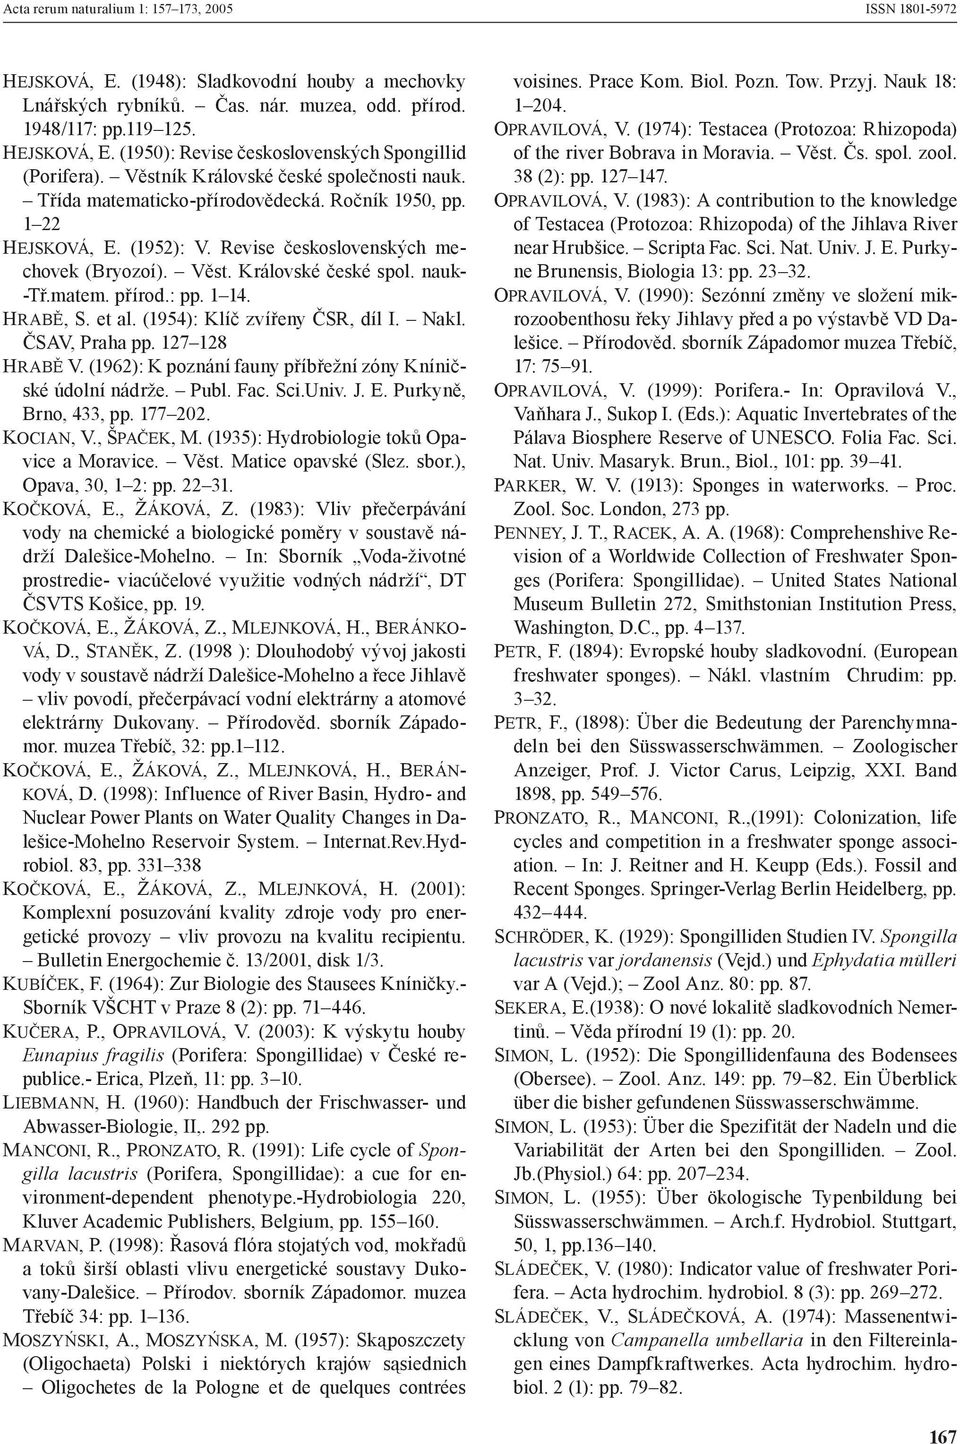 matem. přírod.: pp. 1 14. HRABĚ, S. et al. (1954): Klíč zvířeny ČSR, díl I. Nakl. ČSAV, Praha pp. 127 128 HRABĚ V. (1962): K poznání fauny příbřežní zóny Kníničské údolní nádrže. Publ. Fac. Sci.Univ.